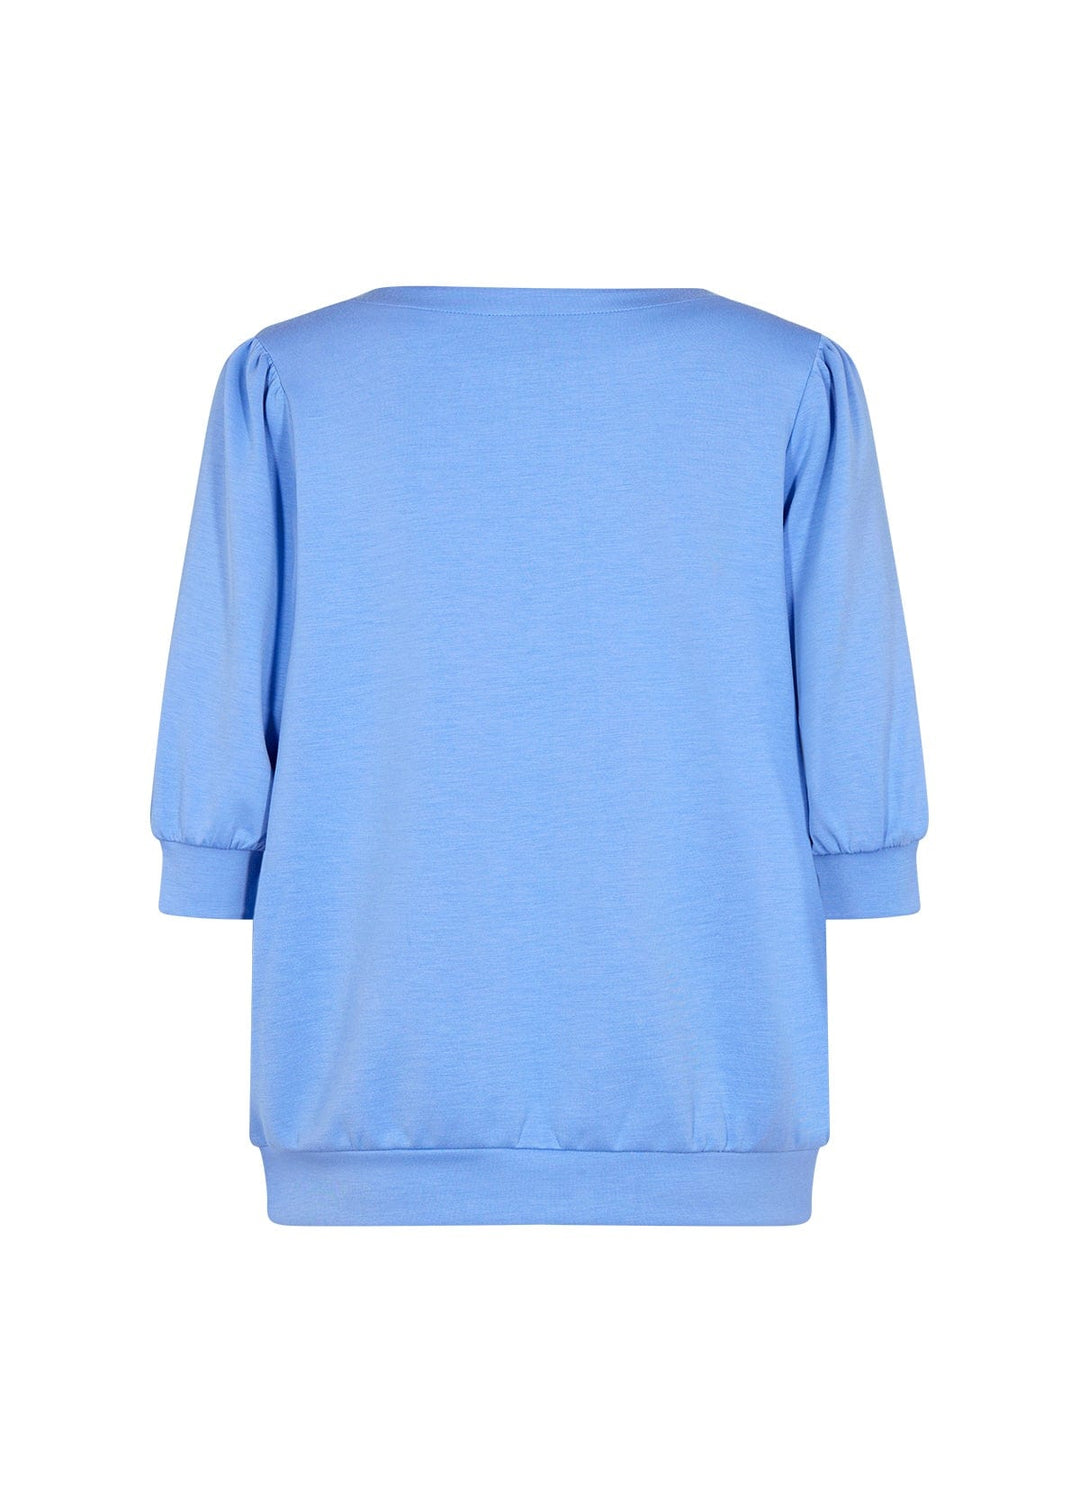 Sc-Banu 133 bright blue | Skjorter og bluser | Smuk - Dameklær på nett